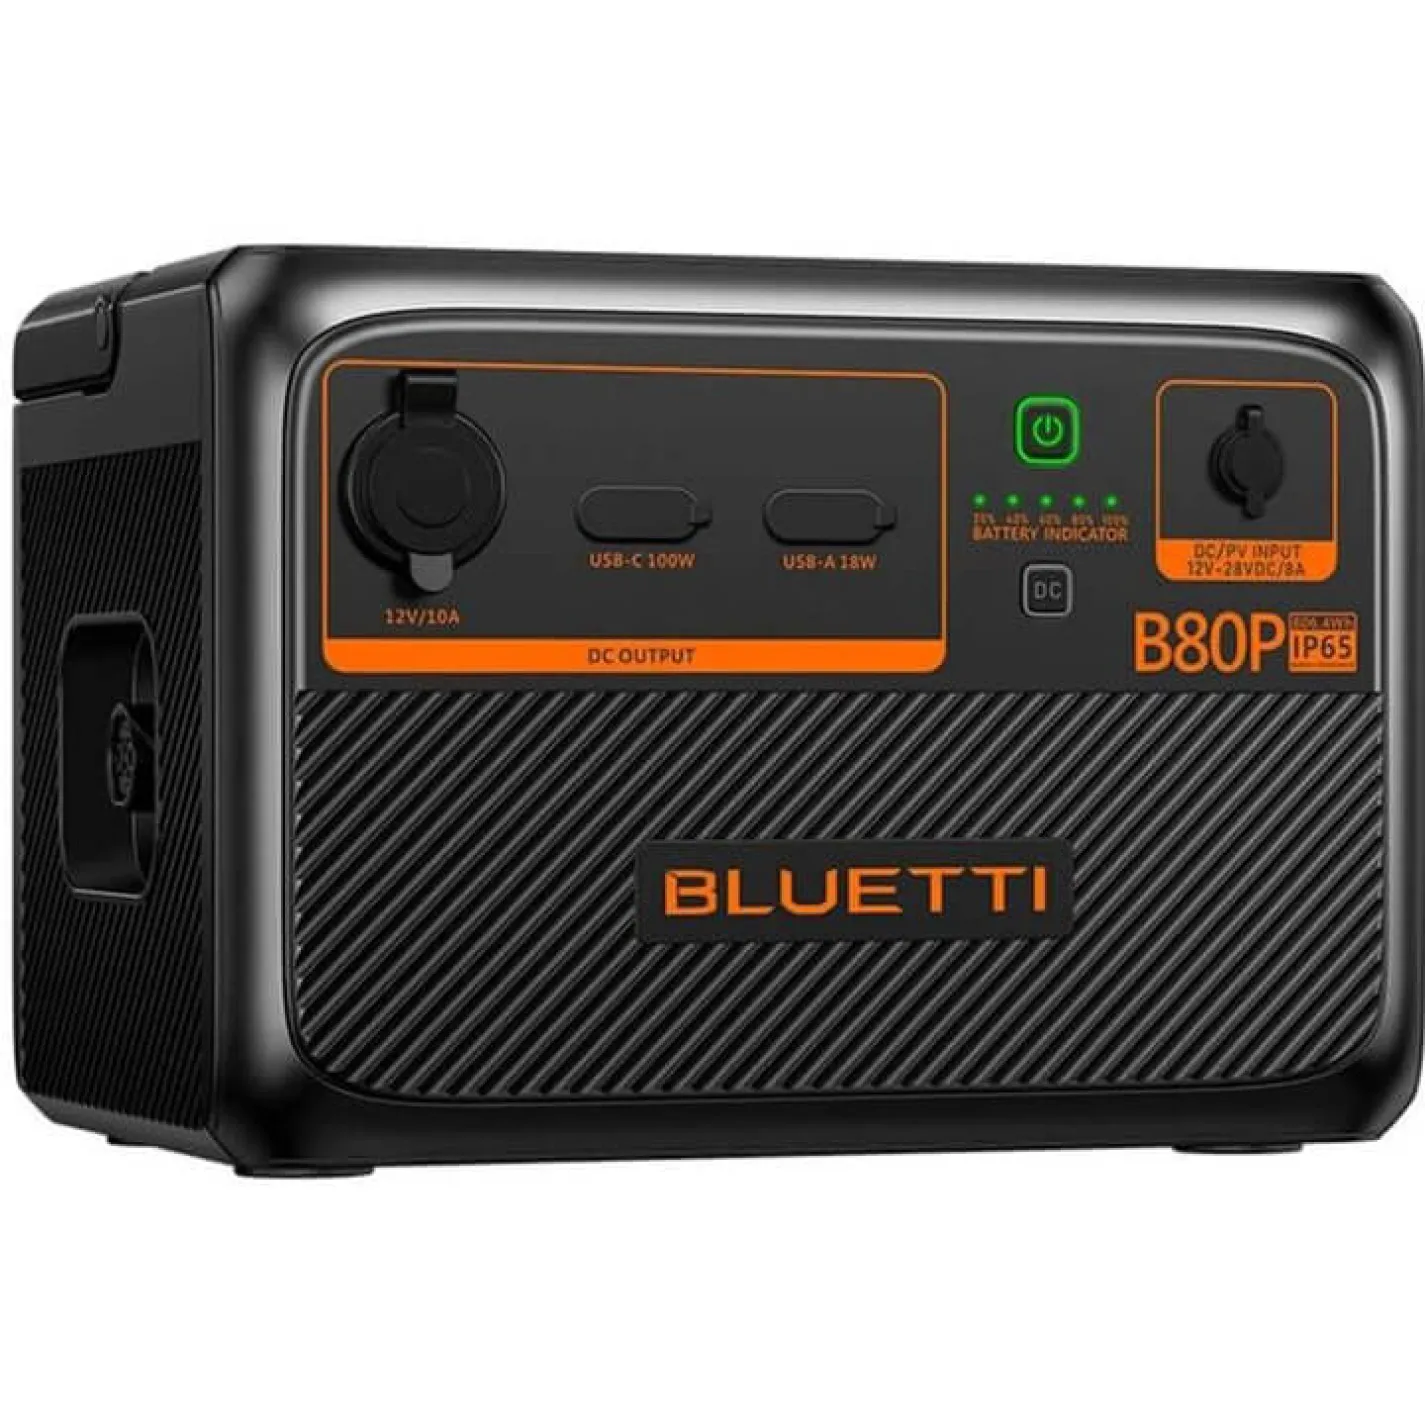 Додаткова батарея Bluetti B80P 806Wh - Фото 1